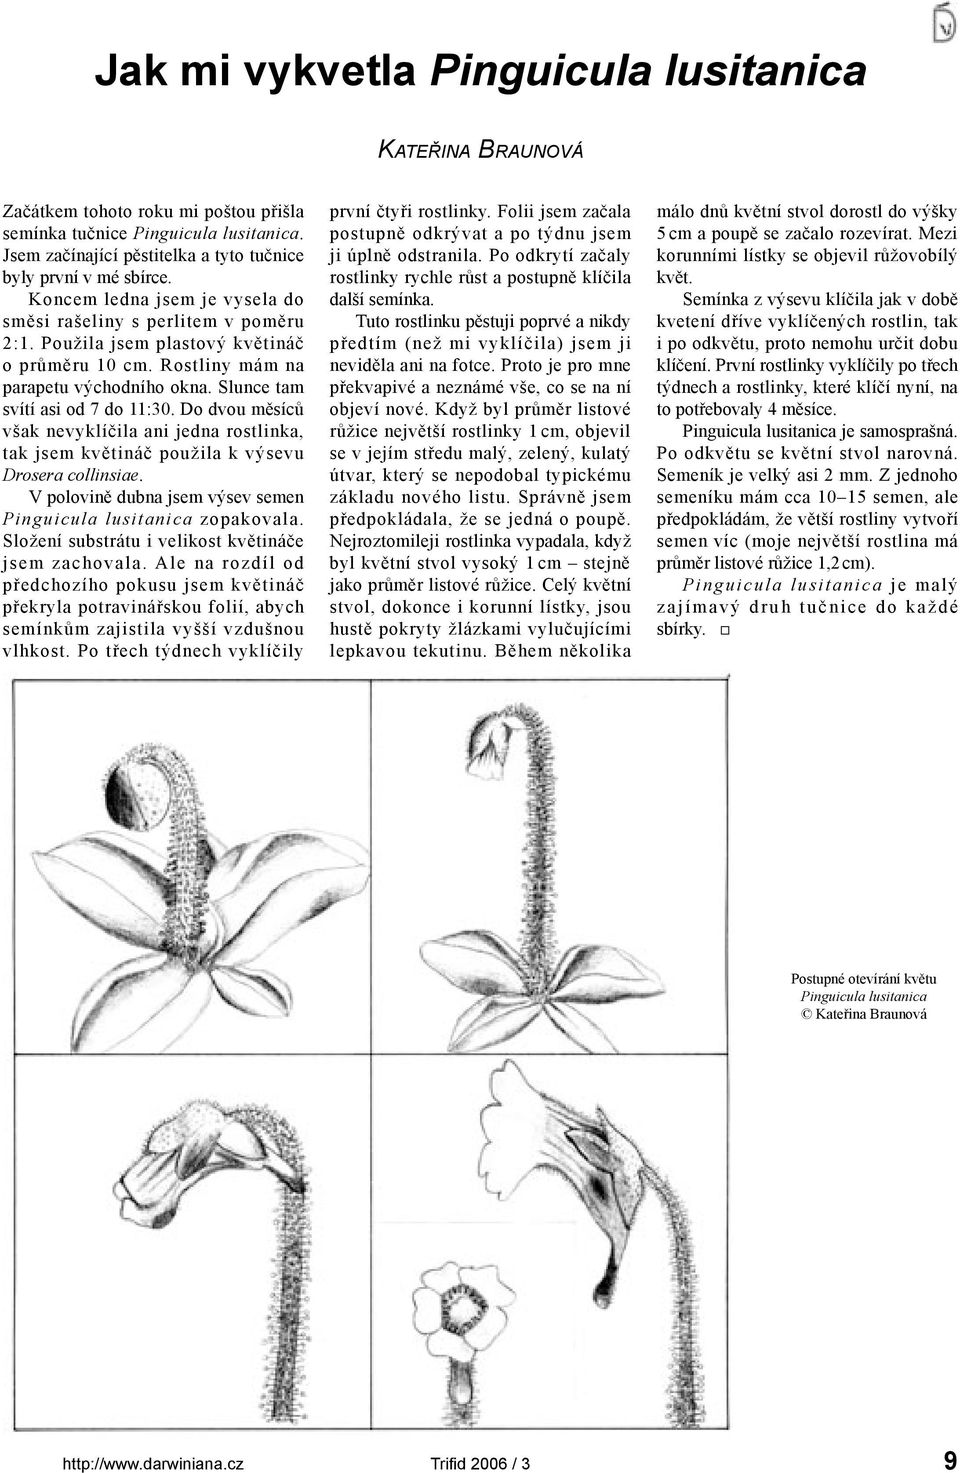 Do dvou měsíců však nevyklíčila ani jedna rostlinka, tak jsem květináč použila k výsevu Drosera collinsiae. V polovině dubna jsem výsev semen Pinguicula lusitanica zopakovala.